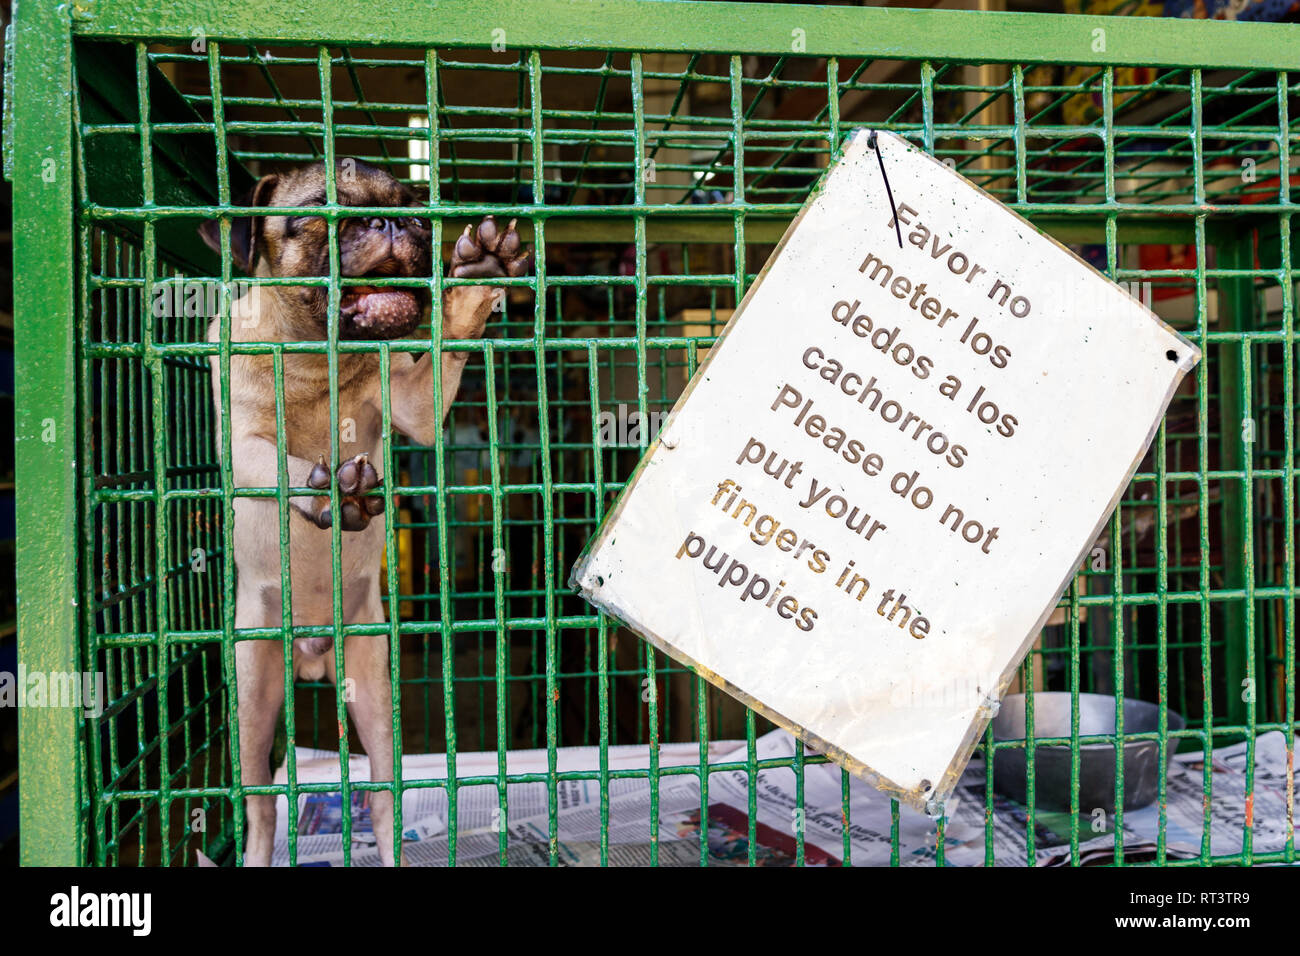 Cartagena Colombie,Centre,centre,Getsemani,magasin d'animaux de compagnie chien pug cage piting, panneau,langue espagnole,ne pas toucher chiot,COL190119037 Banque D'Images